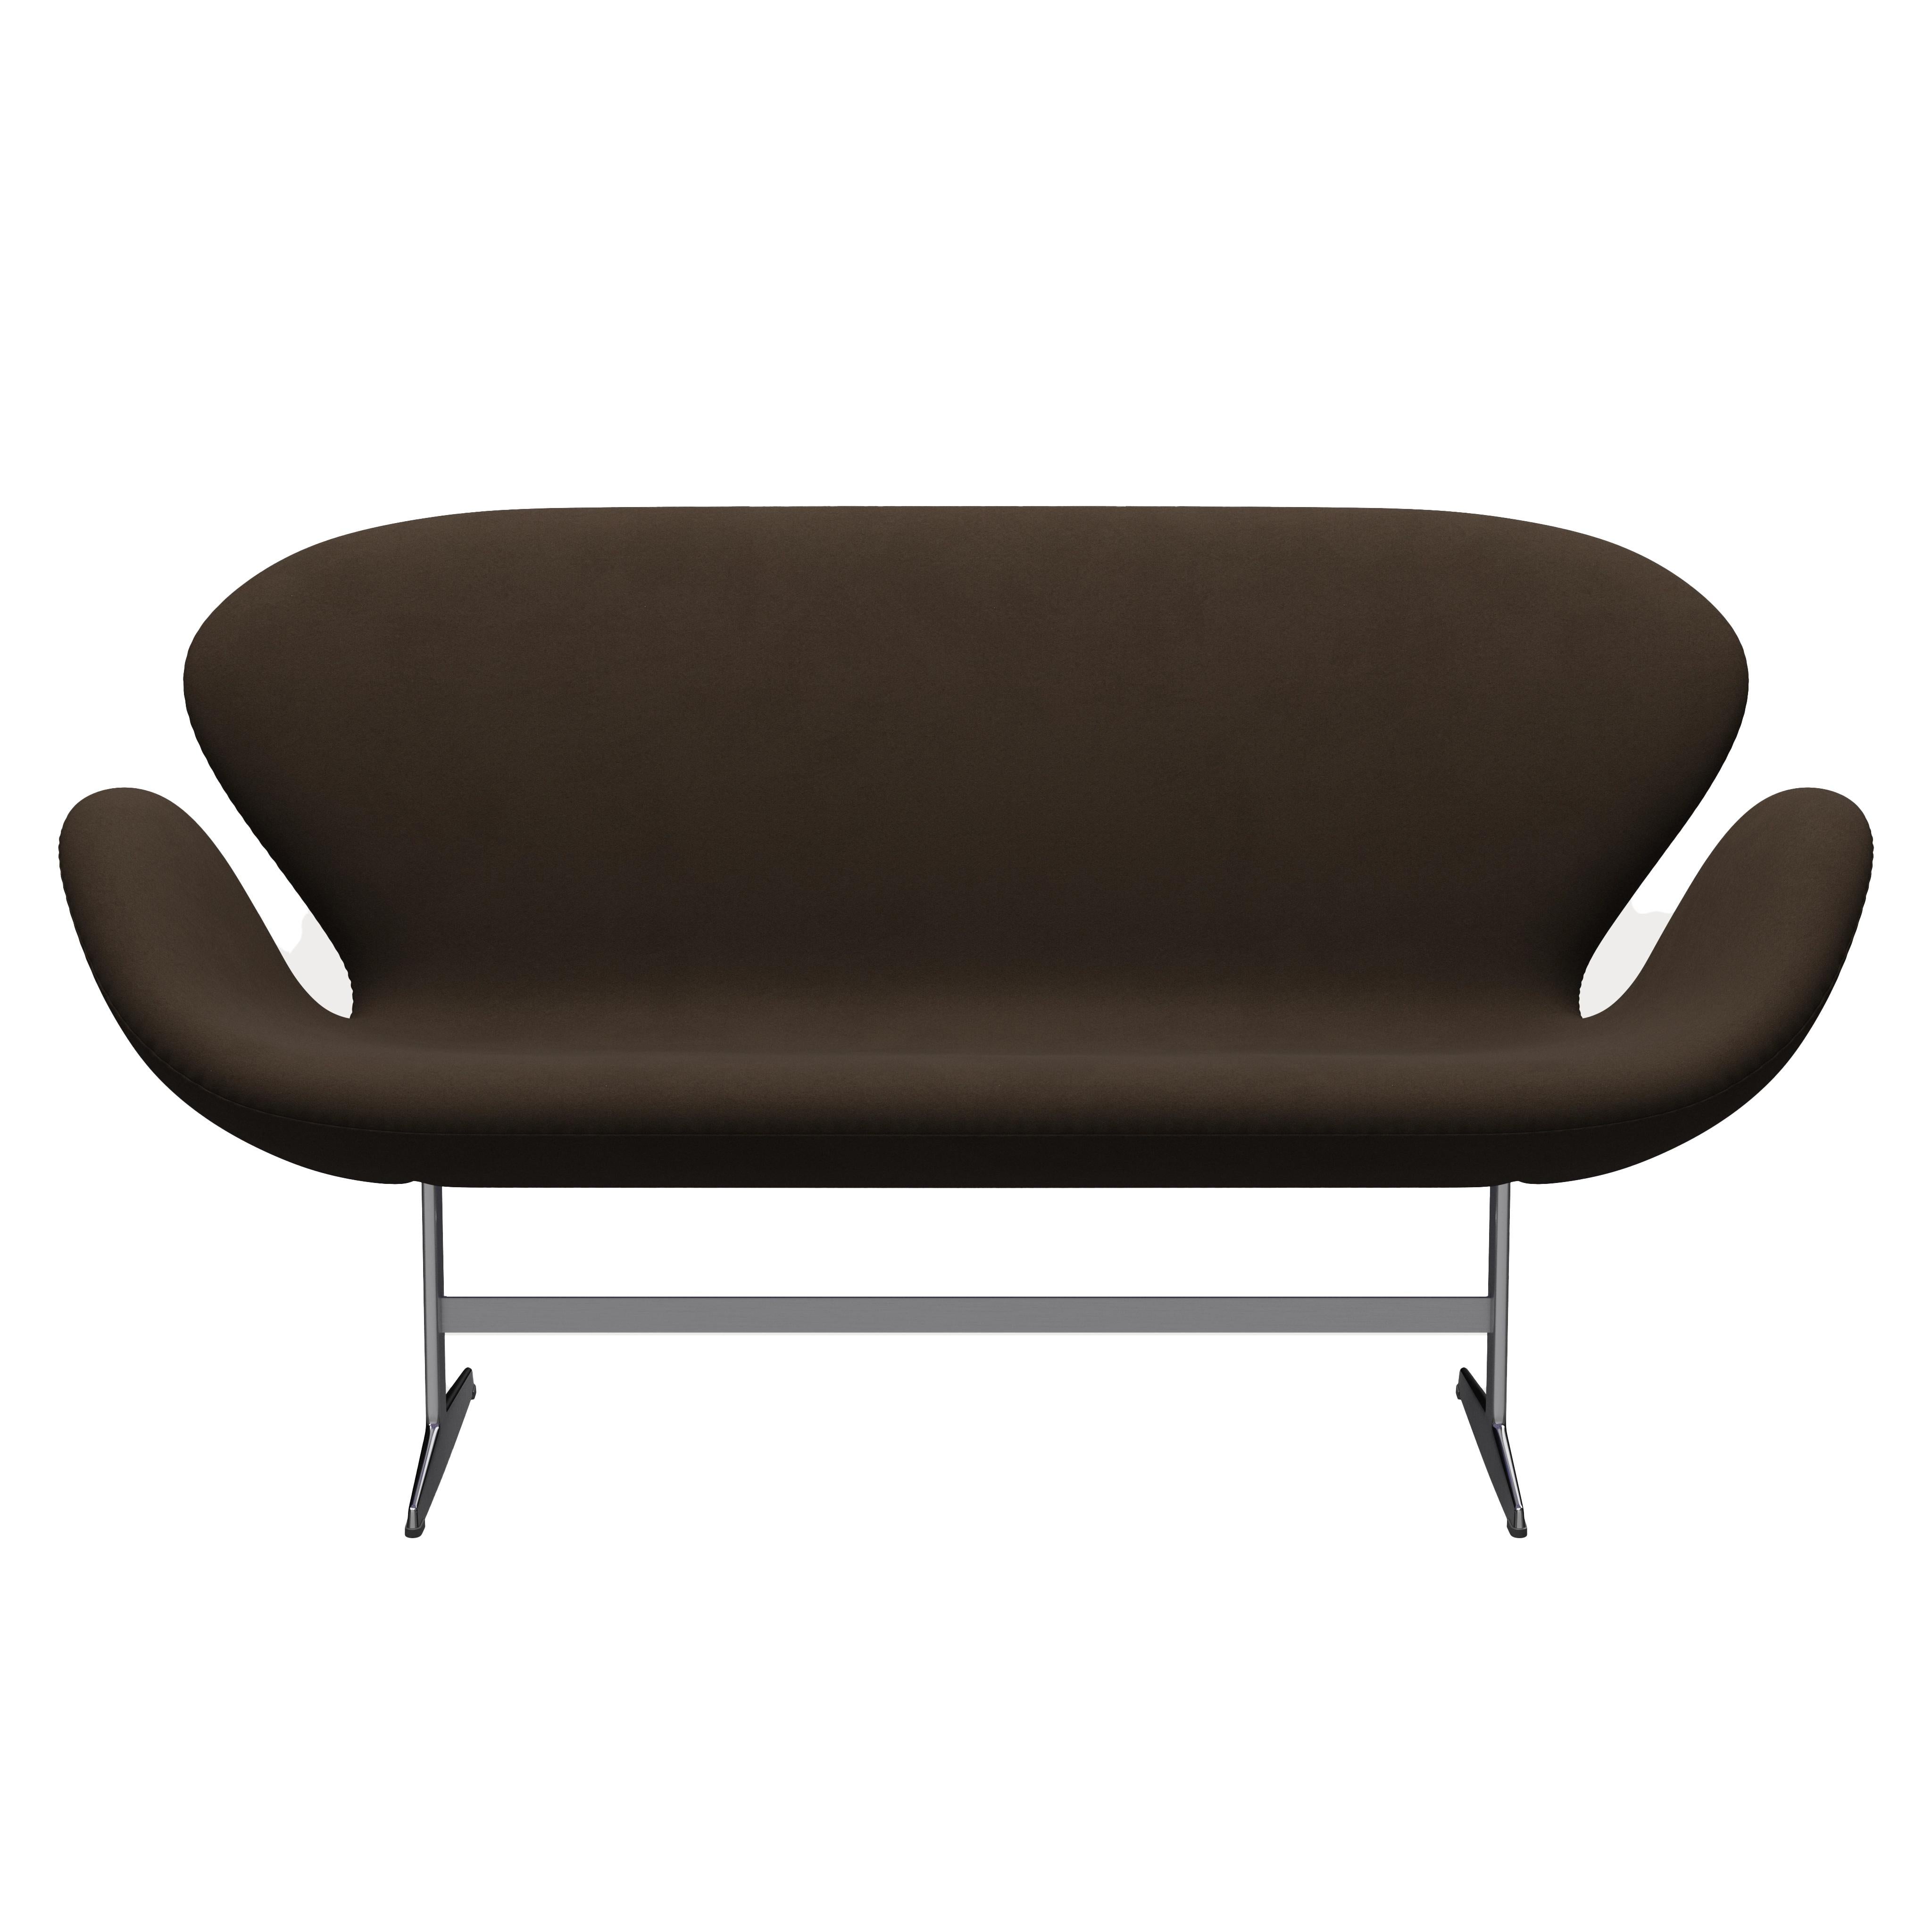 Arne Jacobsen 'Swan' Sofa for Fritz Hansen in Fabric Upholstery (Cat. 3) For Sale 3